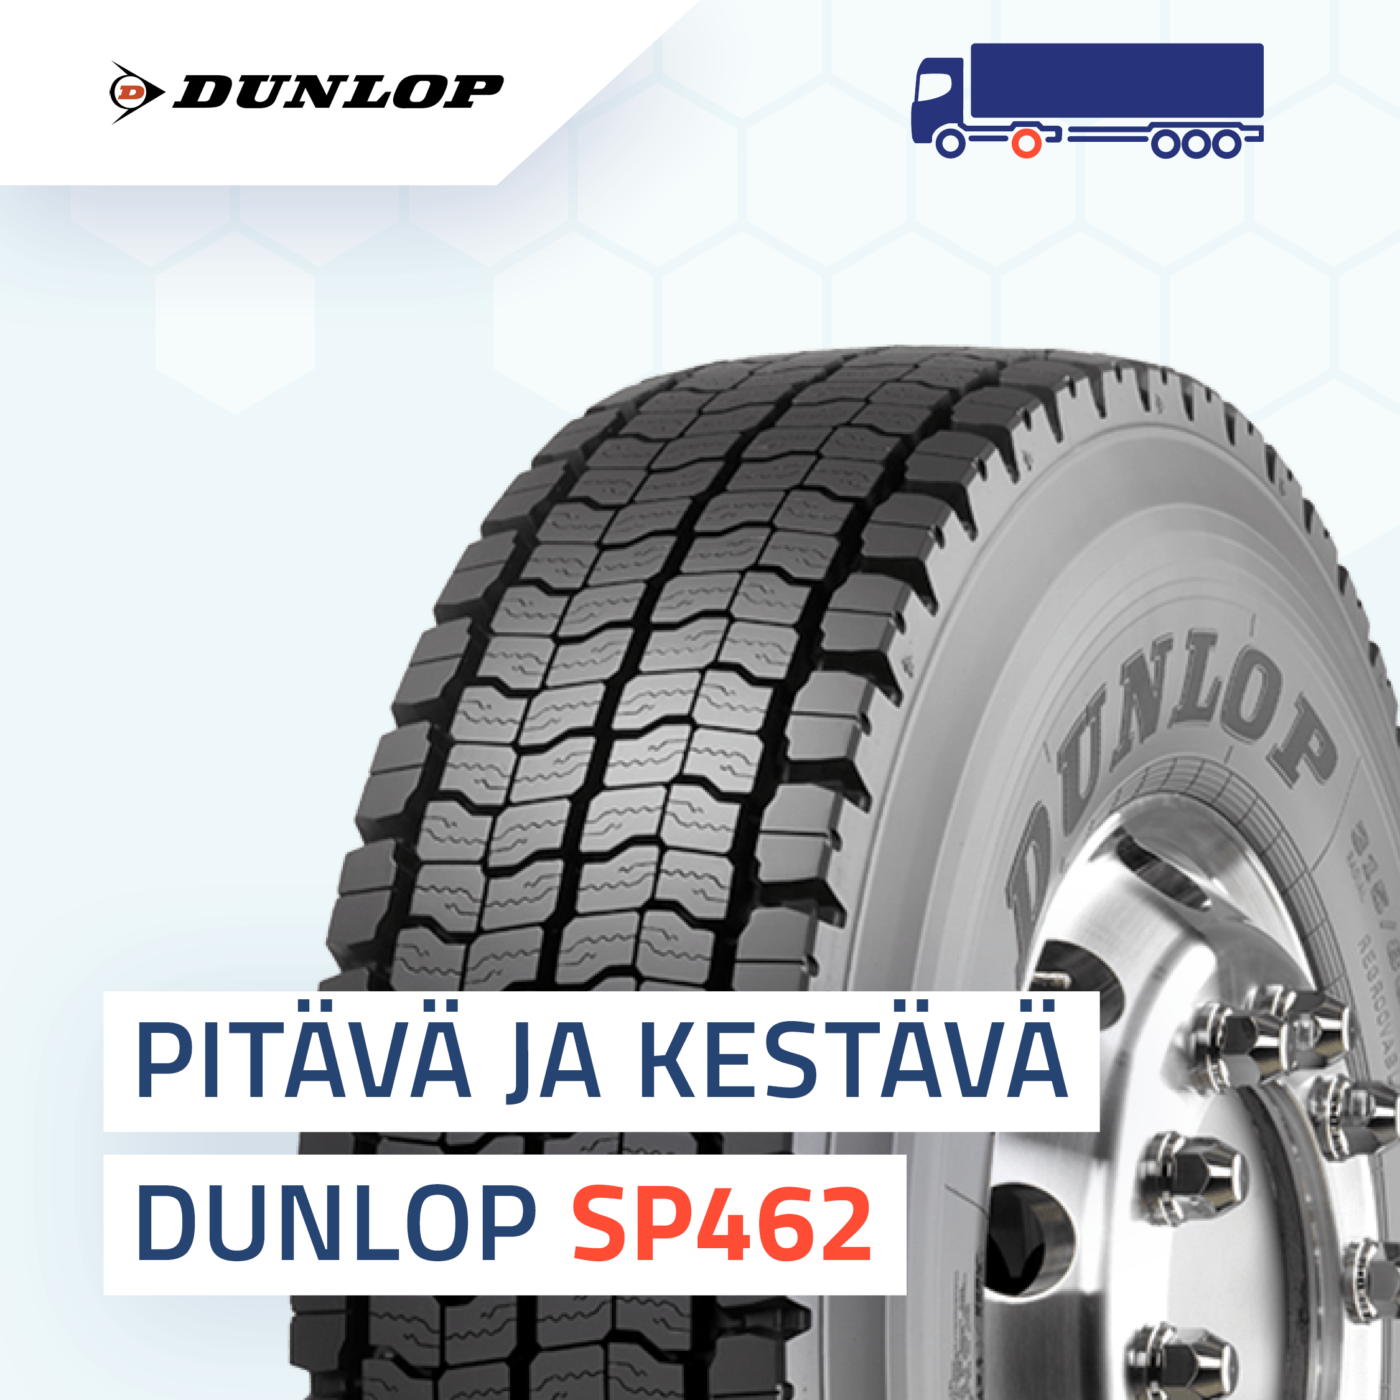 Dunlop SP462